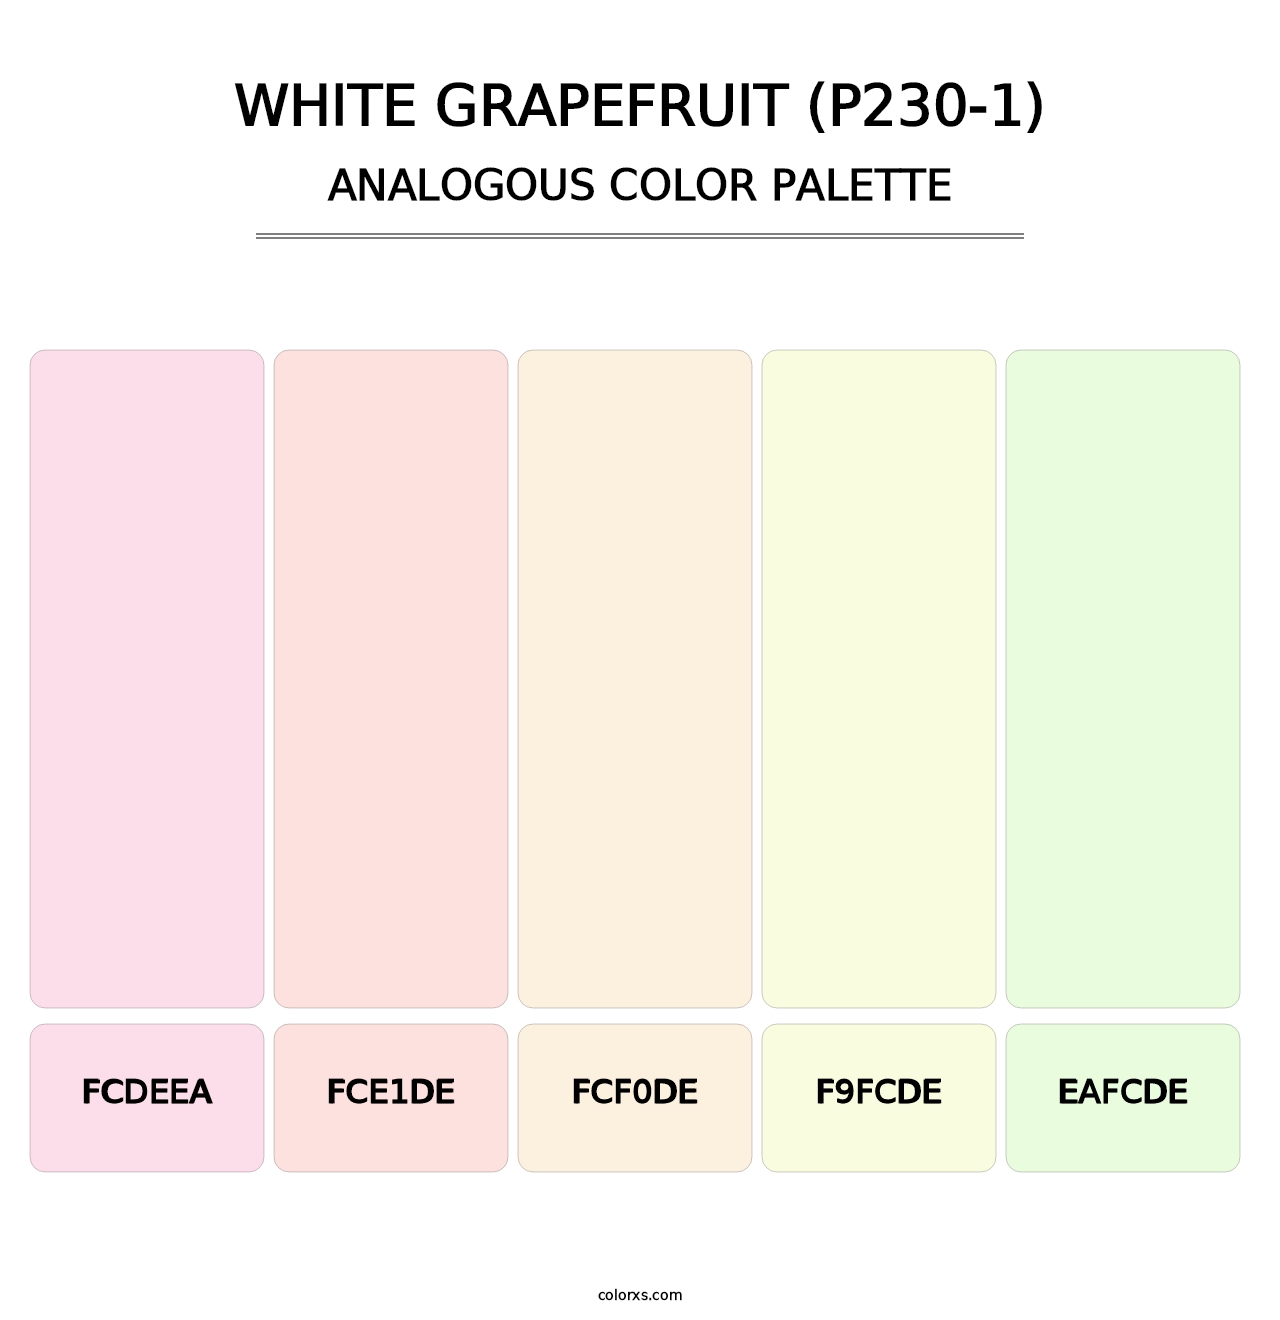 White Grapefruit (P230-1) - Analogous Color Palette